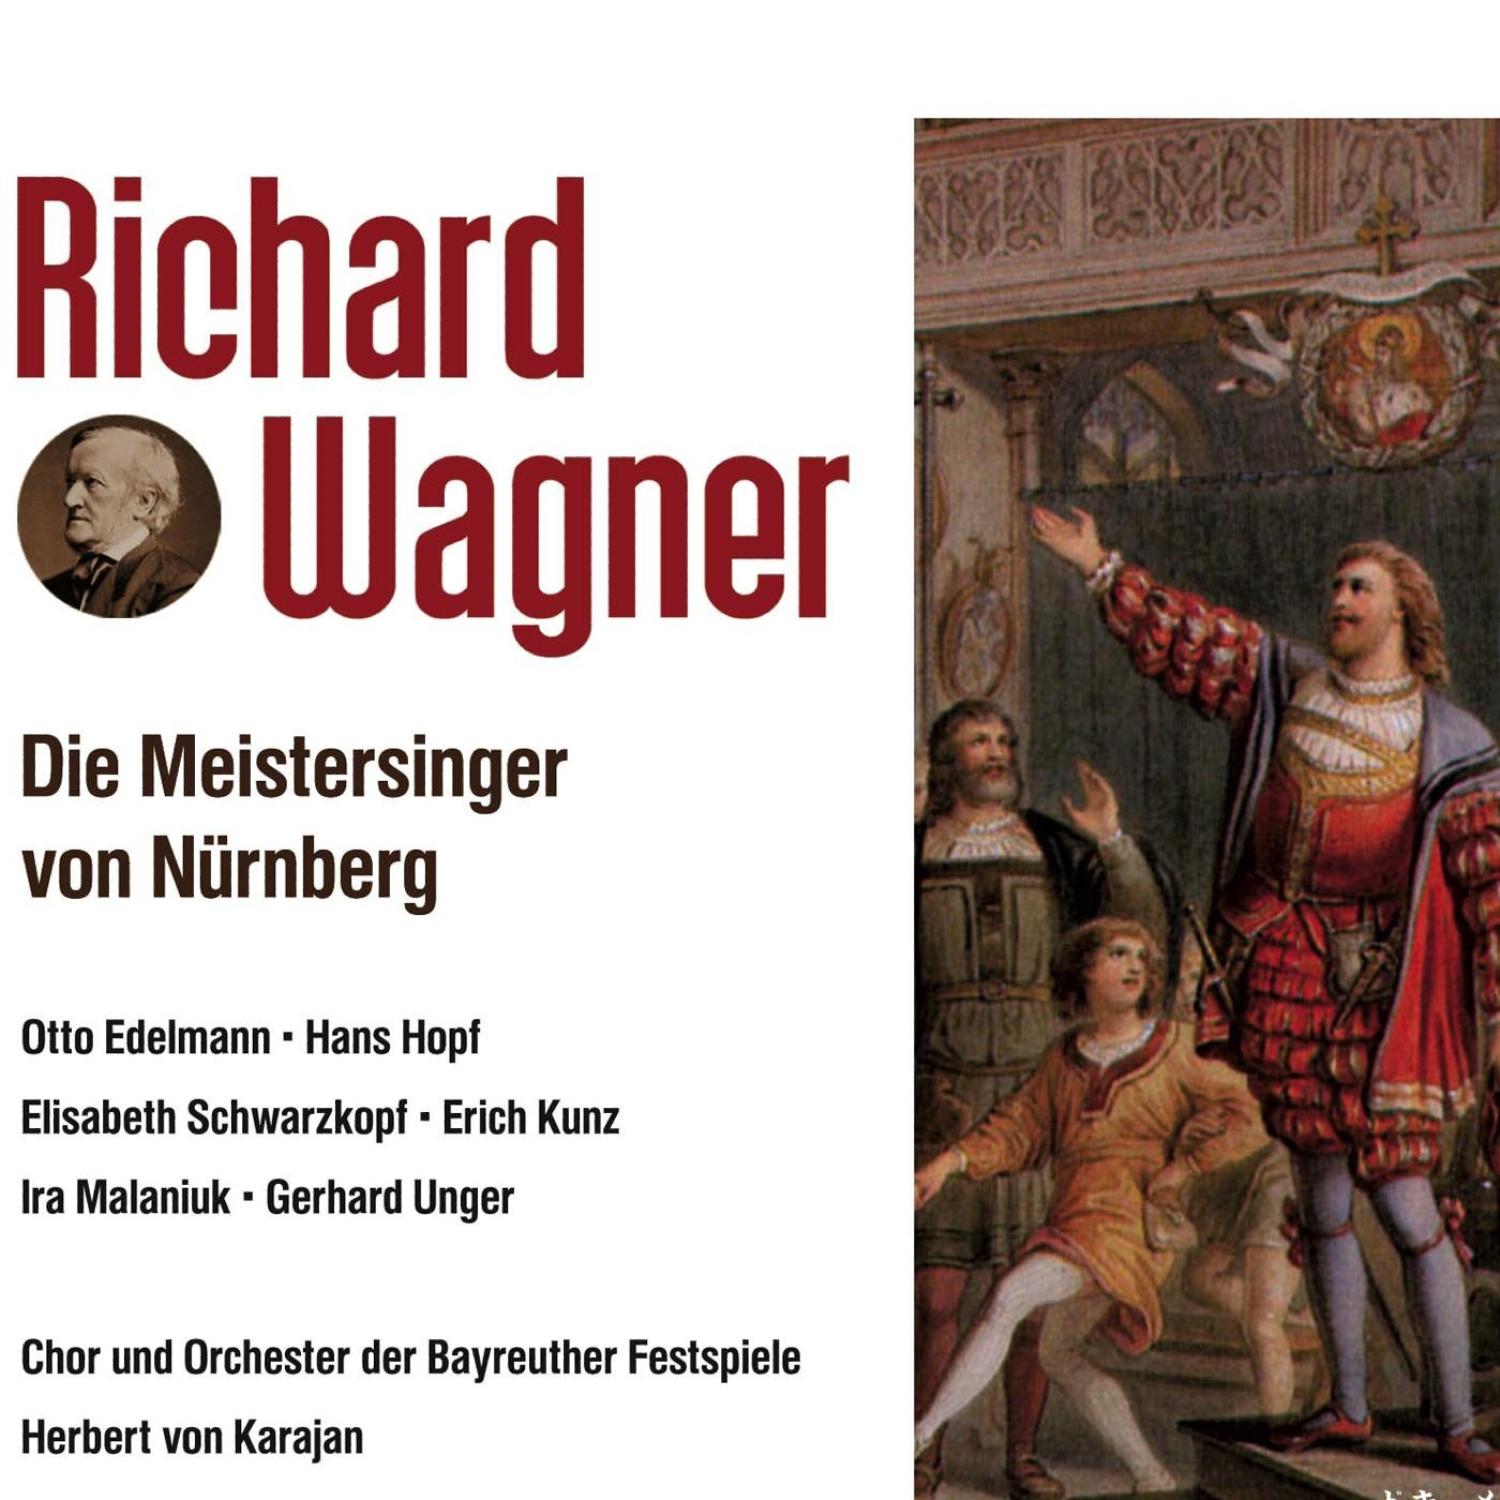 Die Meistersinger von Nürnberg-3 Aufzug Szene 5: Das Lied, fürwahr, ist nicht von mir